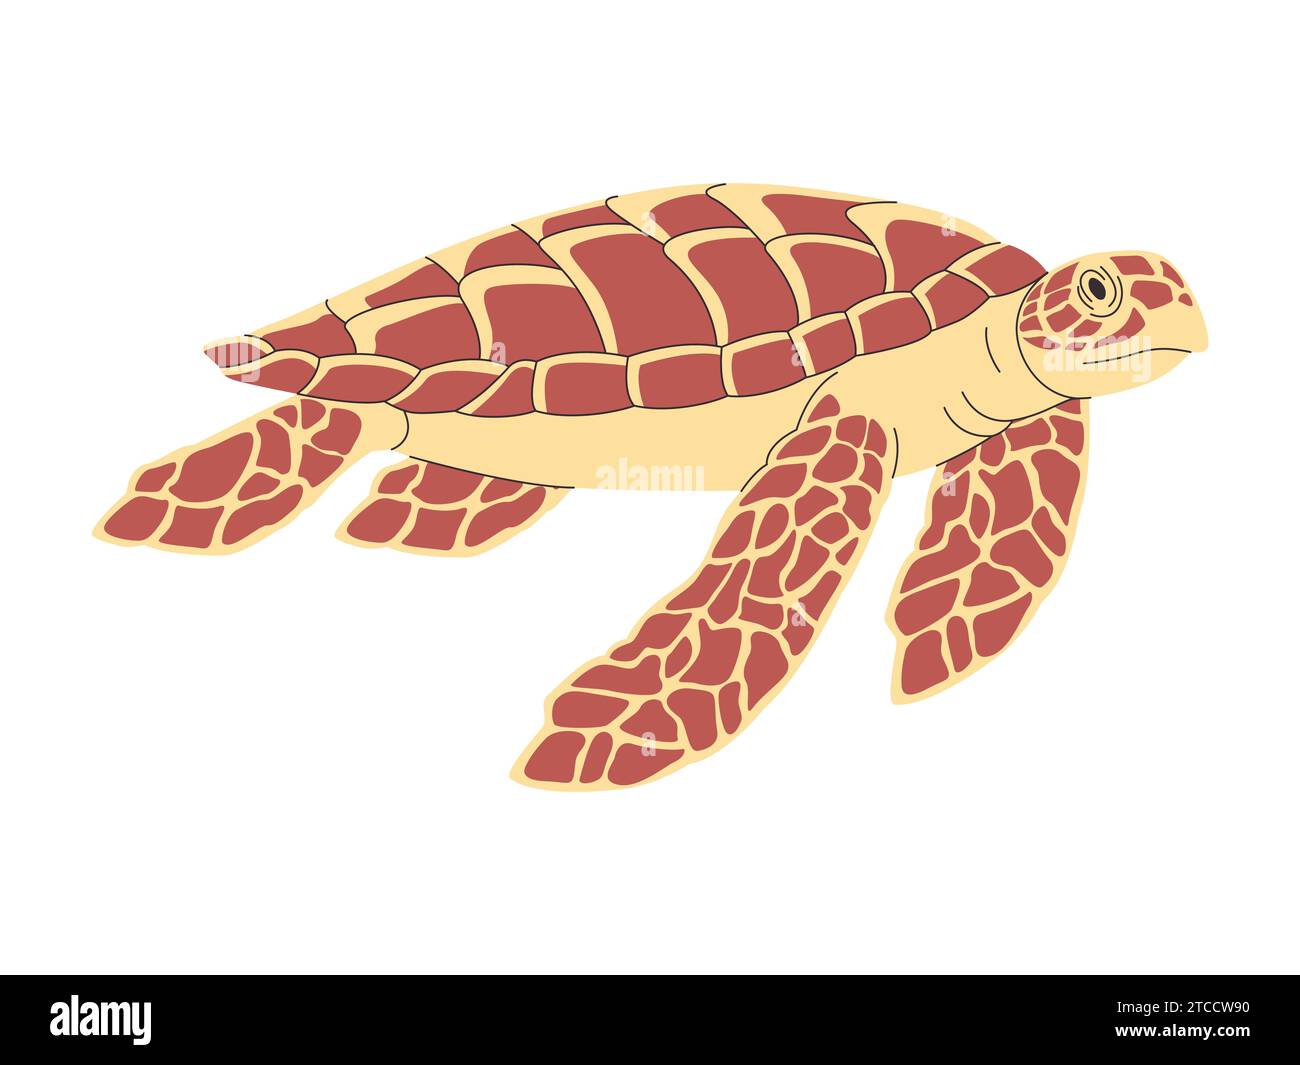 couleur brune tortue hawksbill nature sauvage animal de l'océan plongée lente nageant sous l'eau avec coquille Illustration de Vecteur